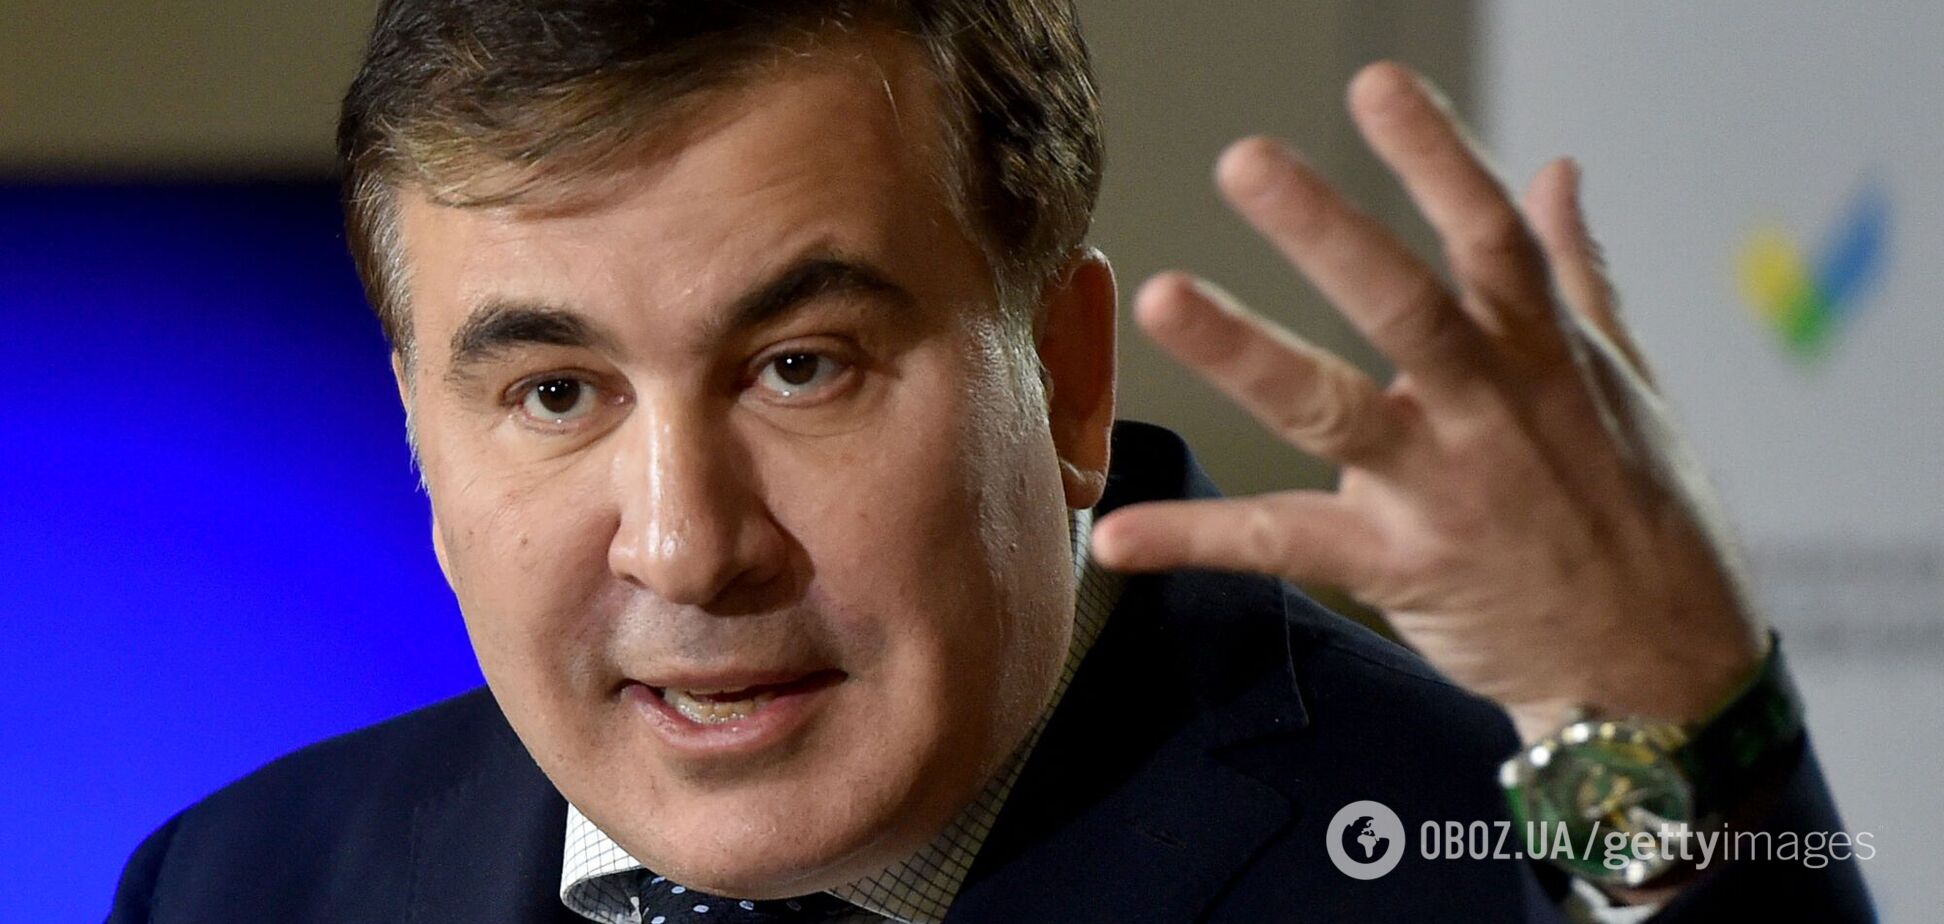 Начались проблемы с моторикой и дикцией: адвокат Саакашвили рассказал о состоянии политика